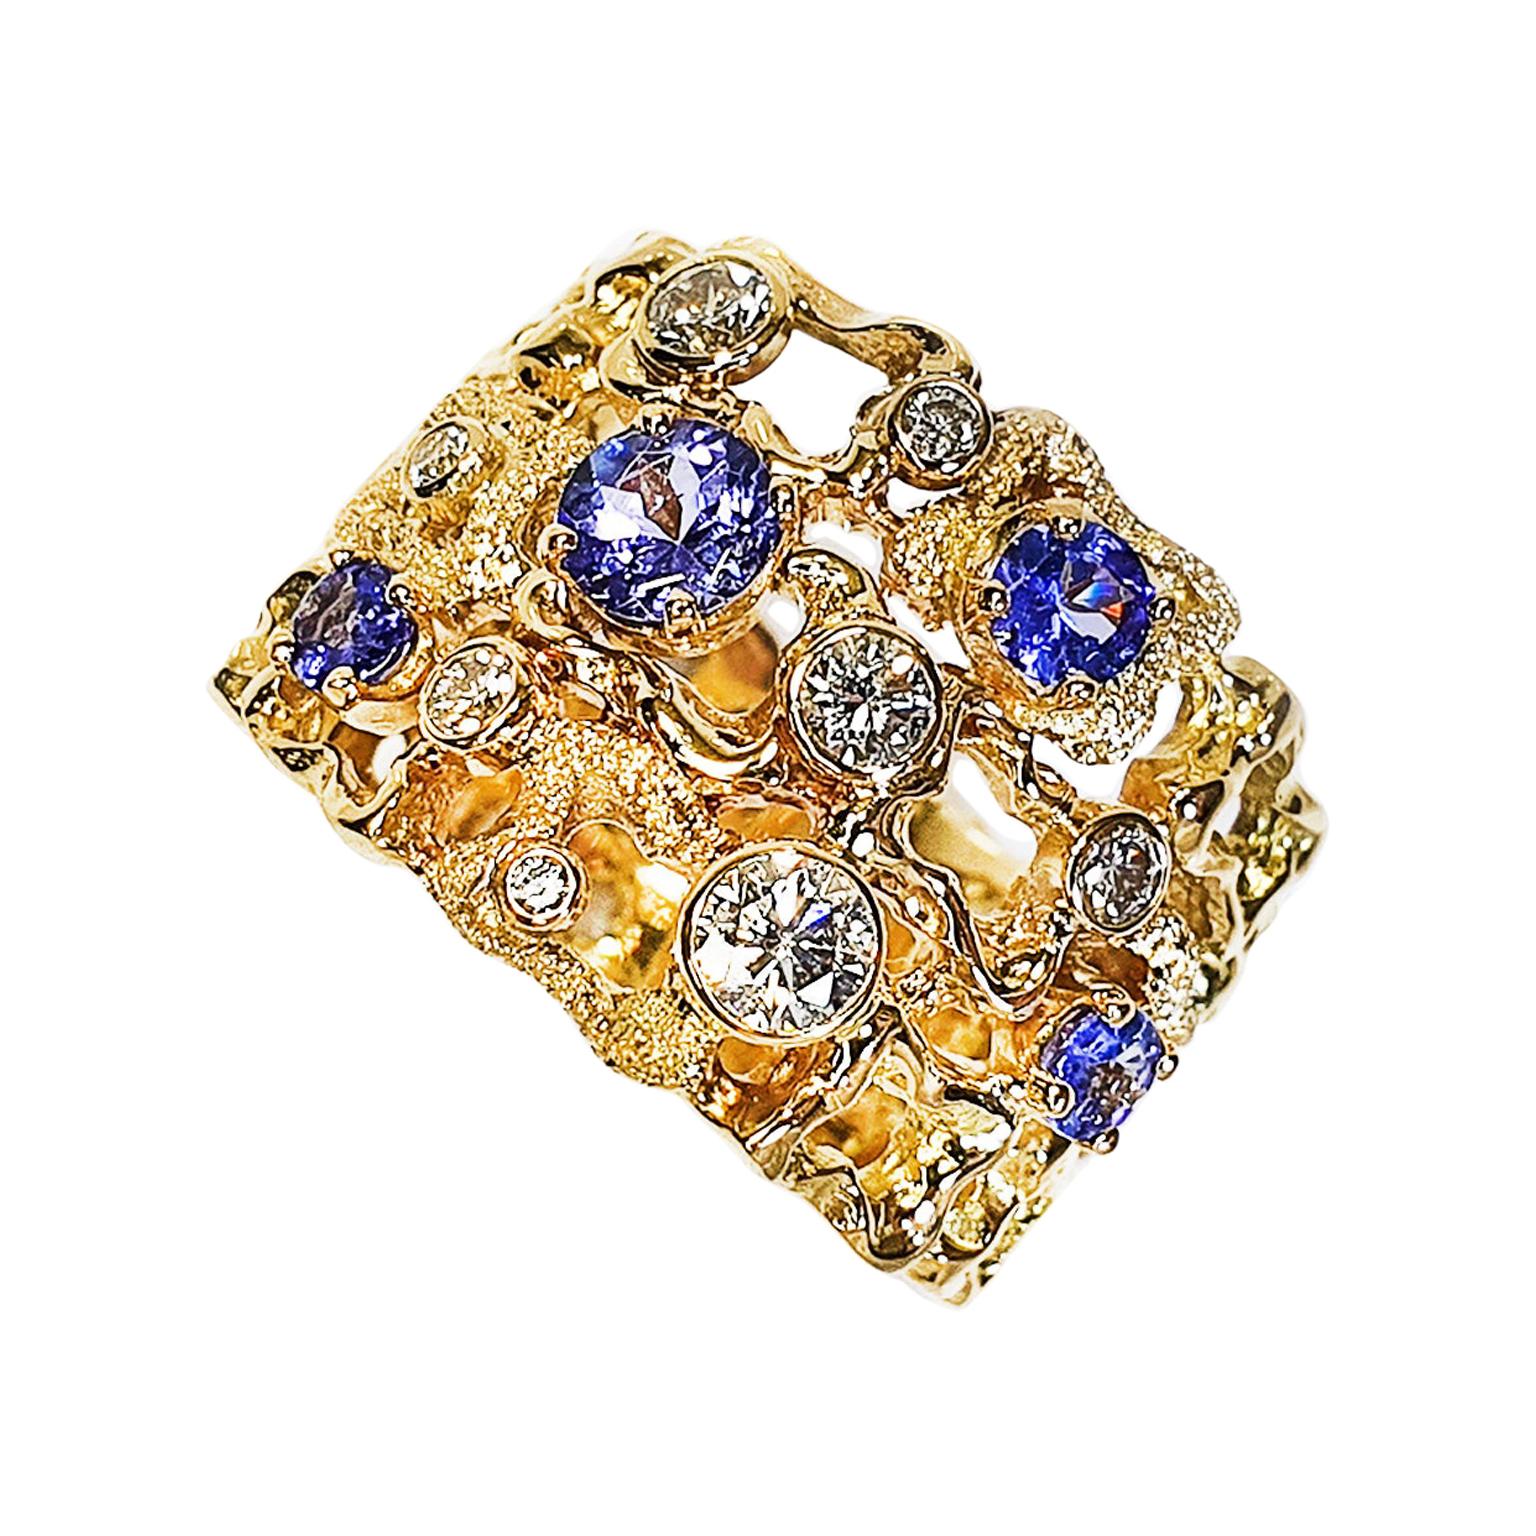 Paul Amey 18k Gold, Diamond and Tanzanite Dress Ring